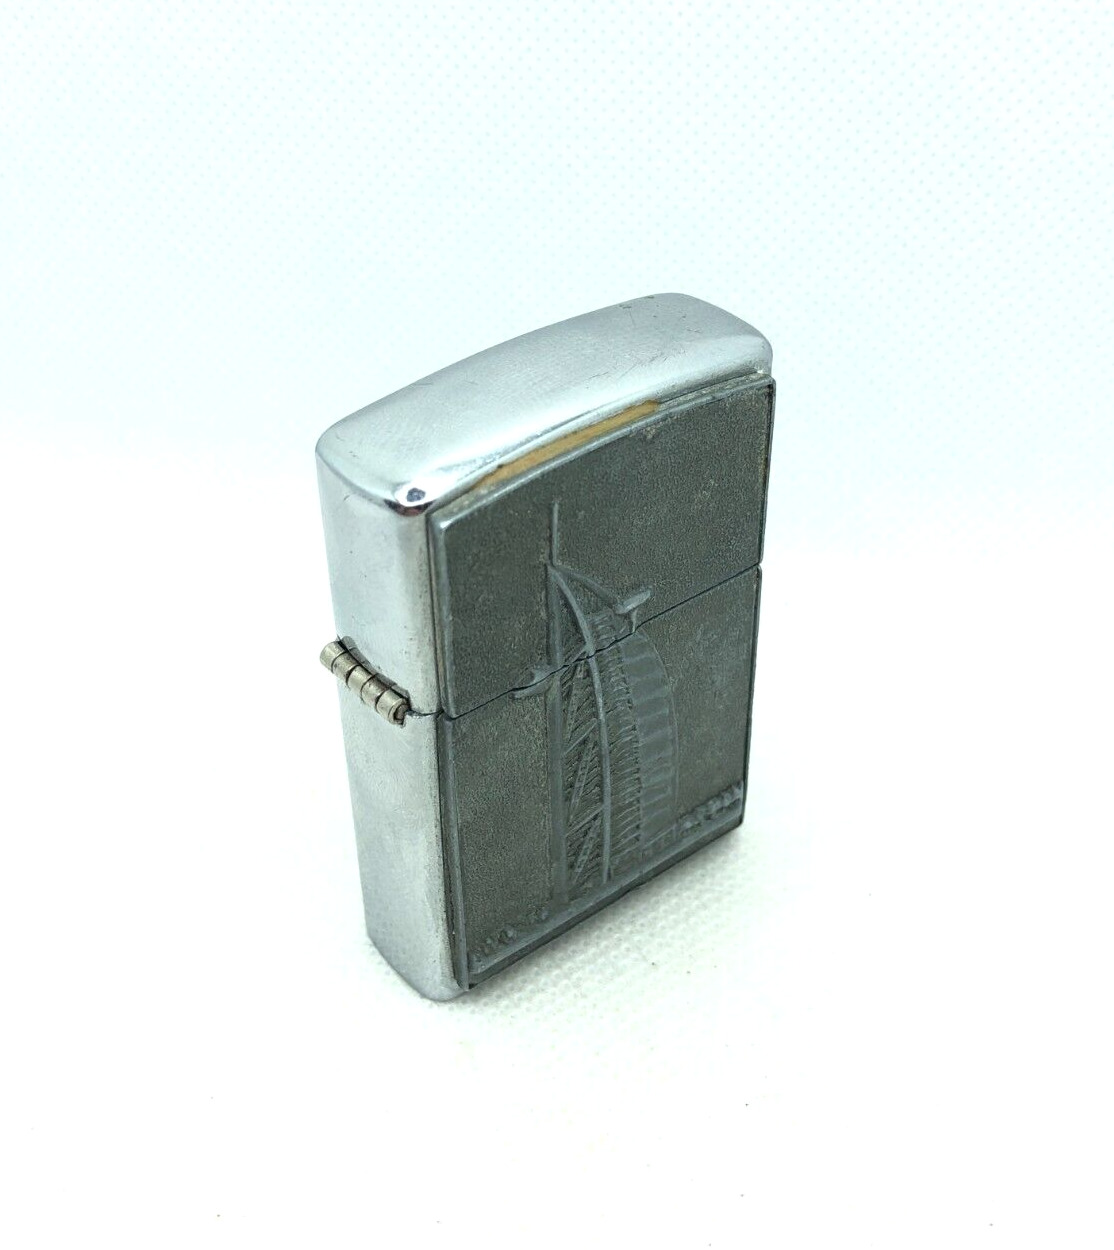 Vintage Burj Al Arab Zippo Lighter model 1996 Used Pocket lighter Collectible